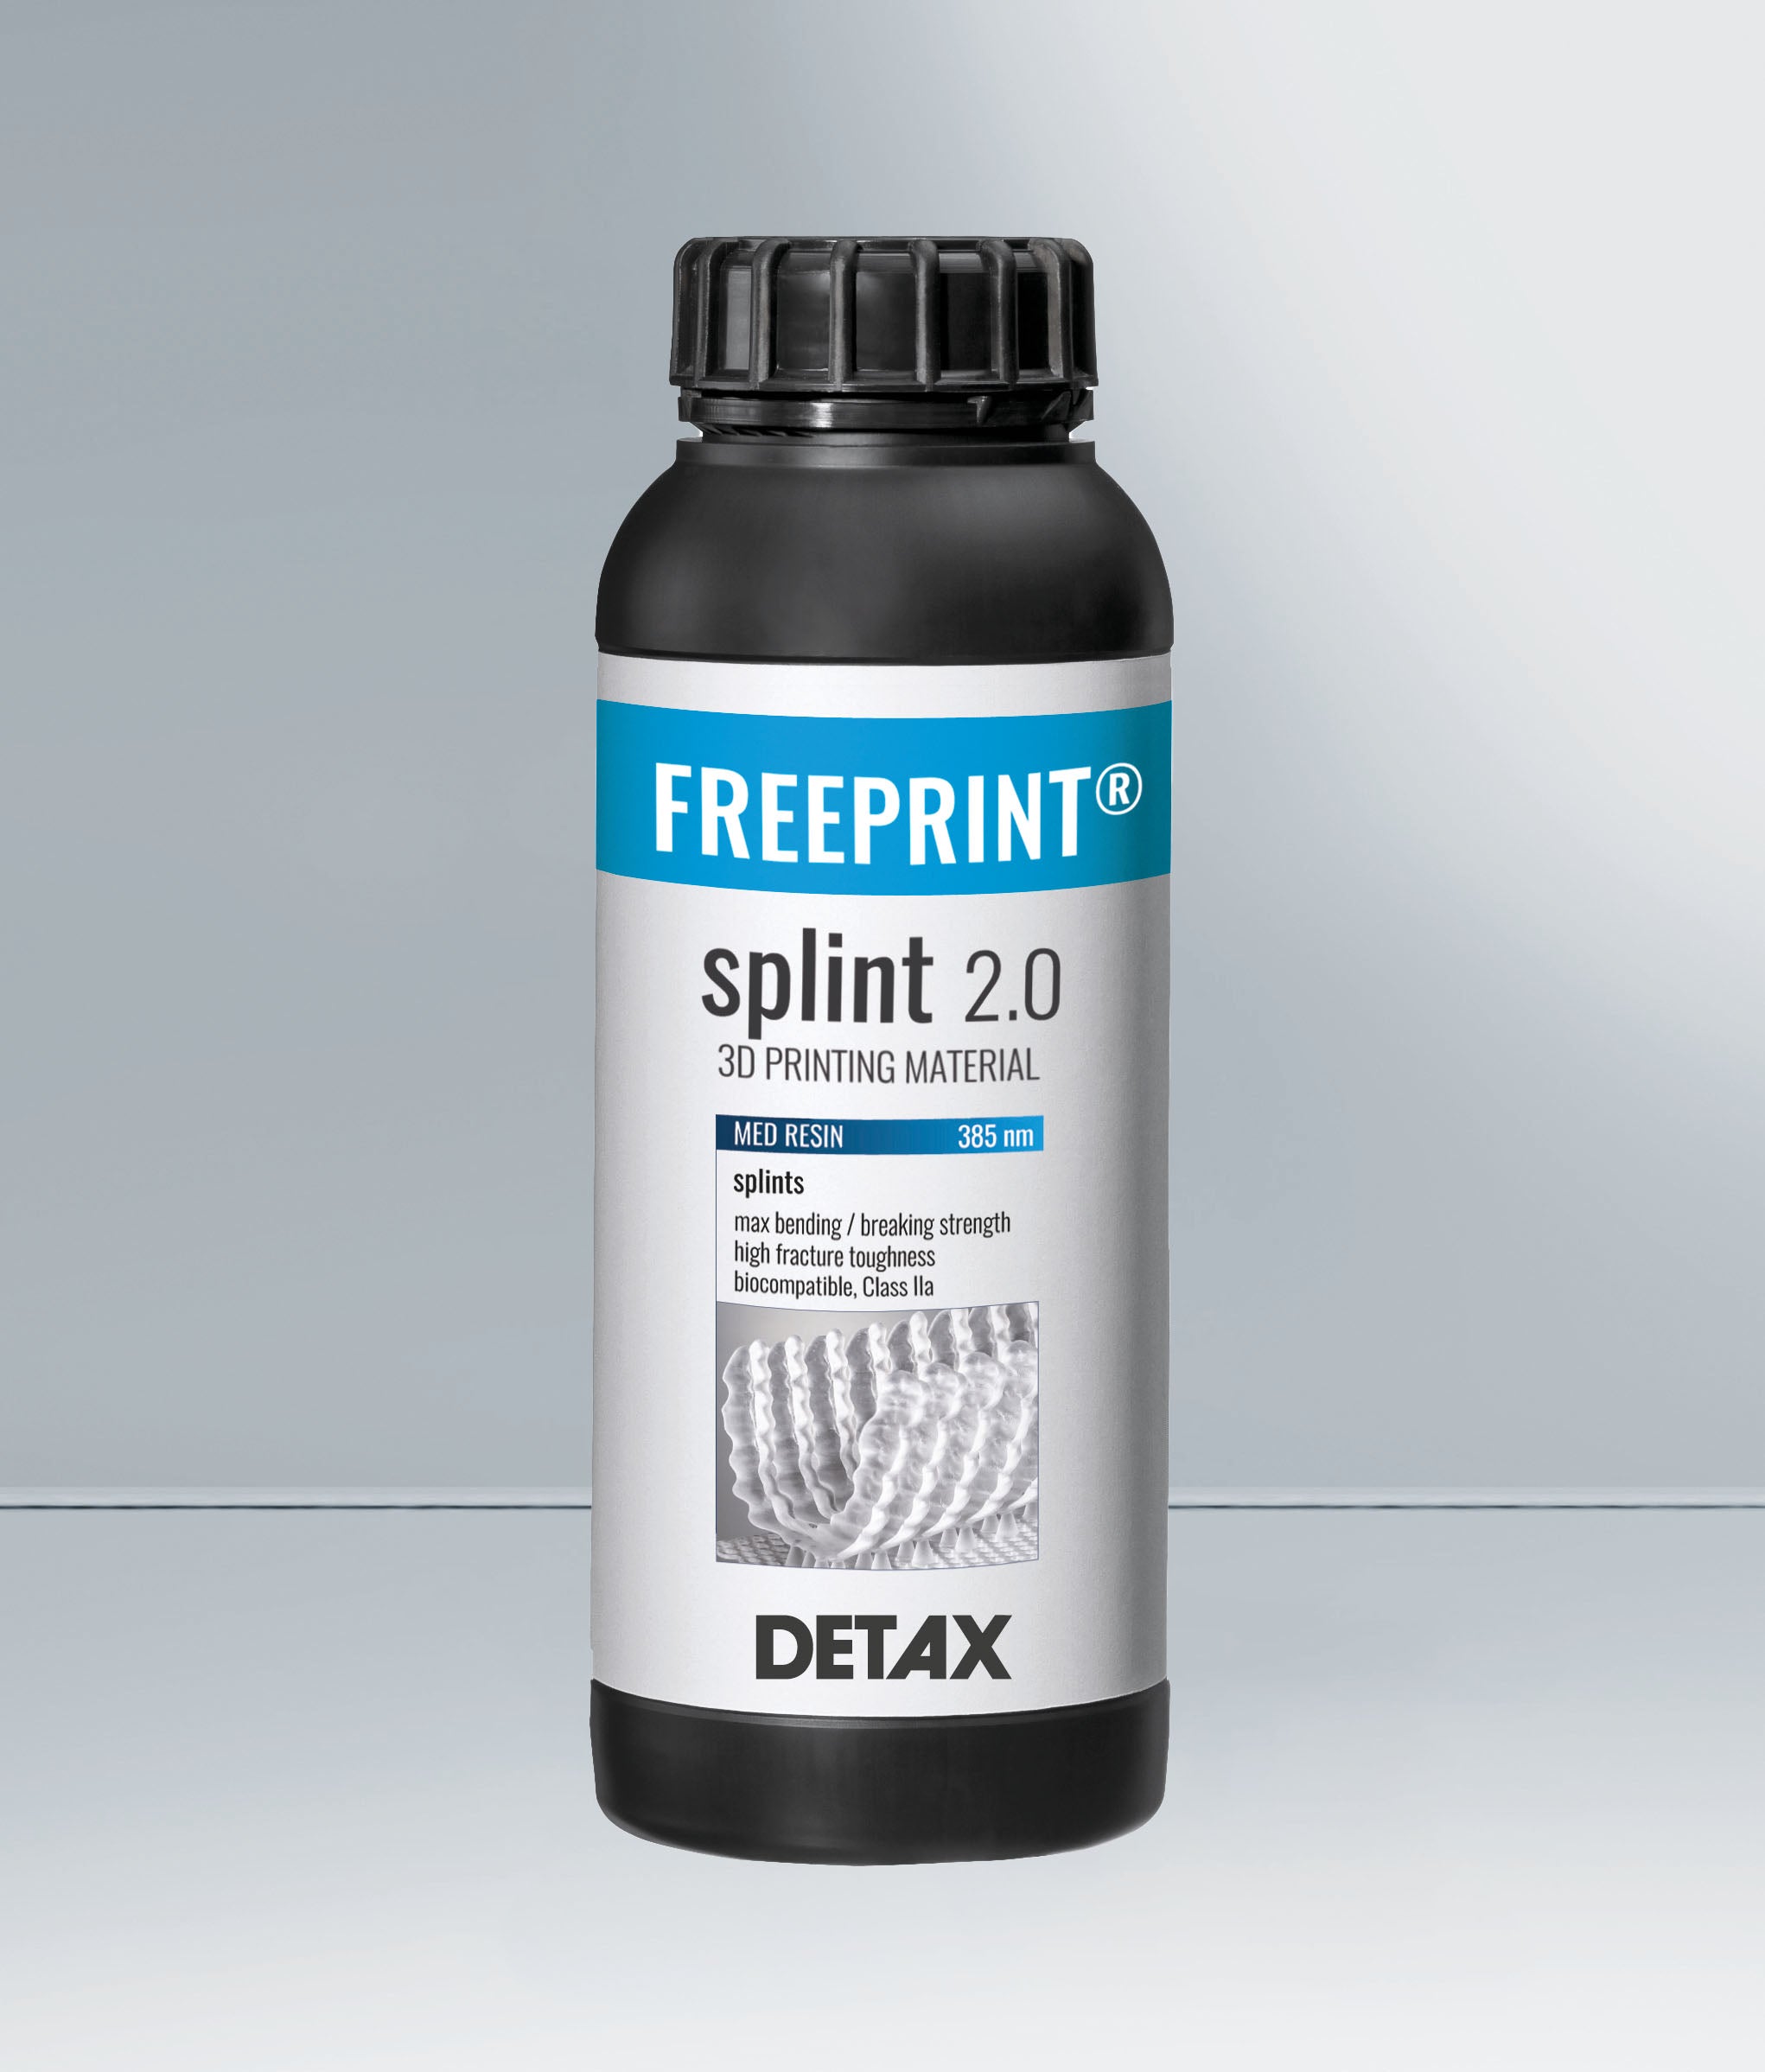 Detax Freeprint Splint